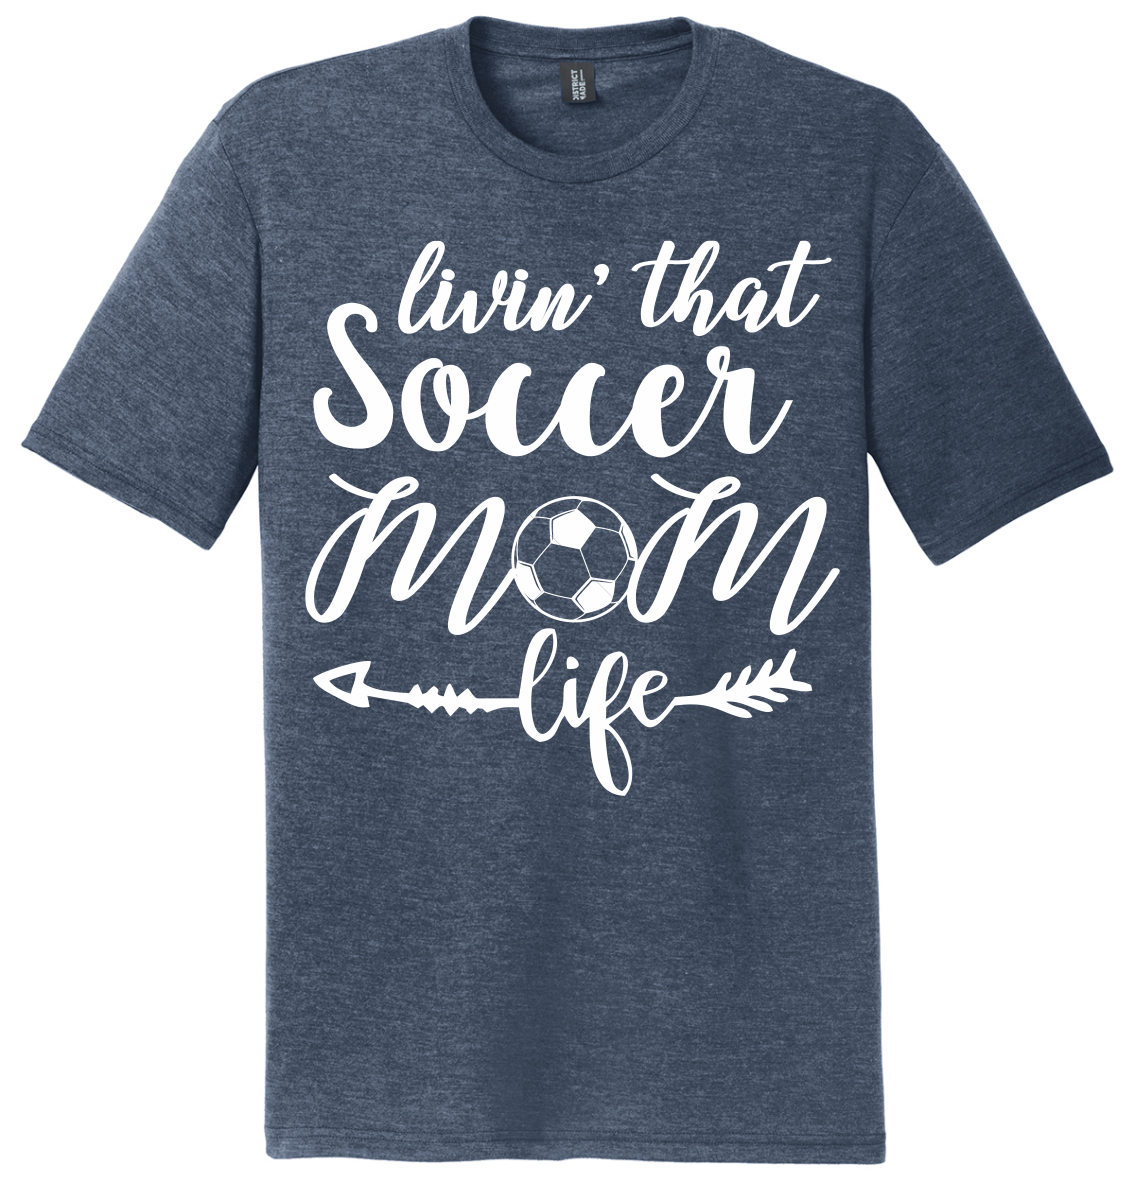 Livin' that Soccer Mom Life Soft T